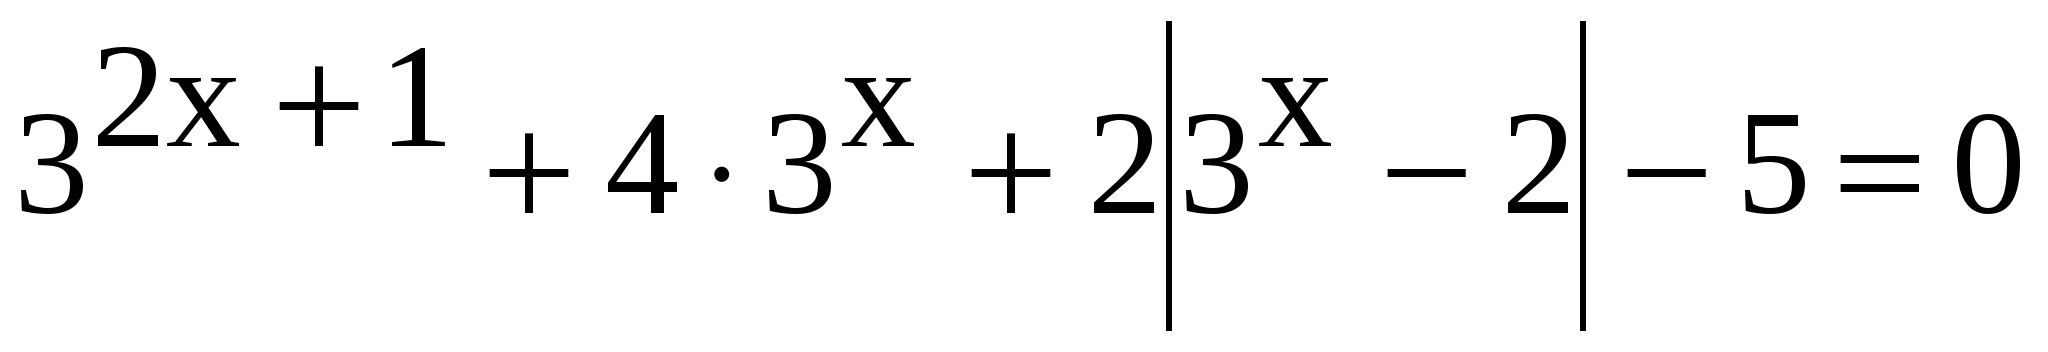 Программа элективного курса по математике Такие разные уравнения для 11 класса